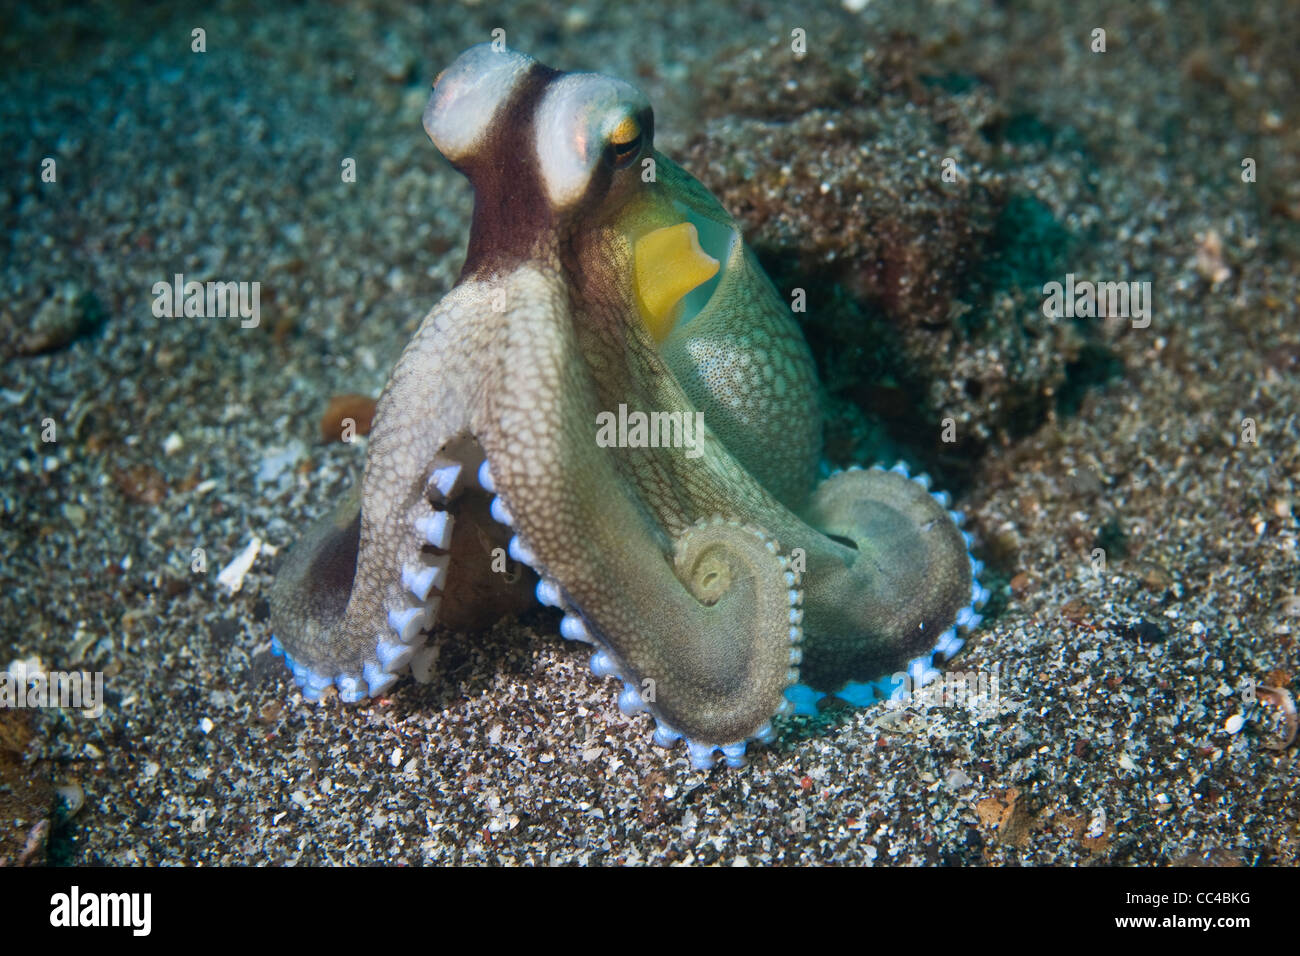 Oft flüchtet ein Kokosnuss Oktopus (Amphioctopus Marginatus), auch bekannt als Veined Octopus, sich in leeren Schalen oder Kokosnüsse. Stockfoto